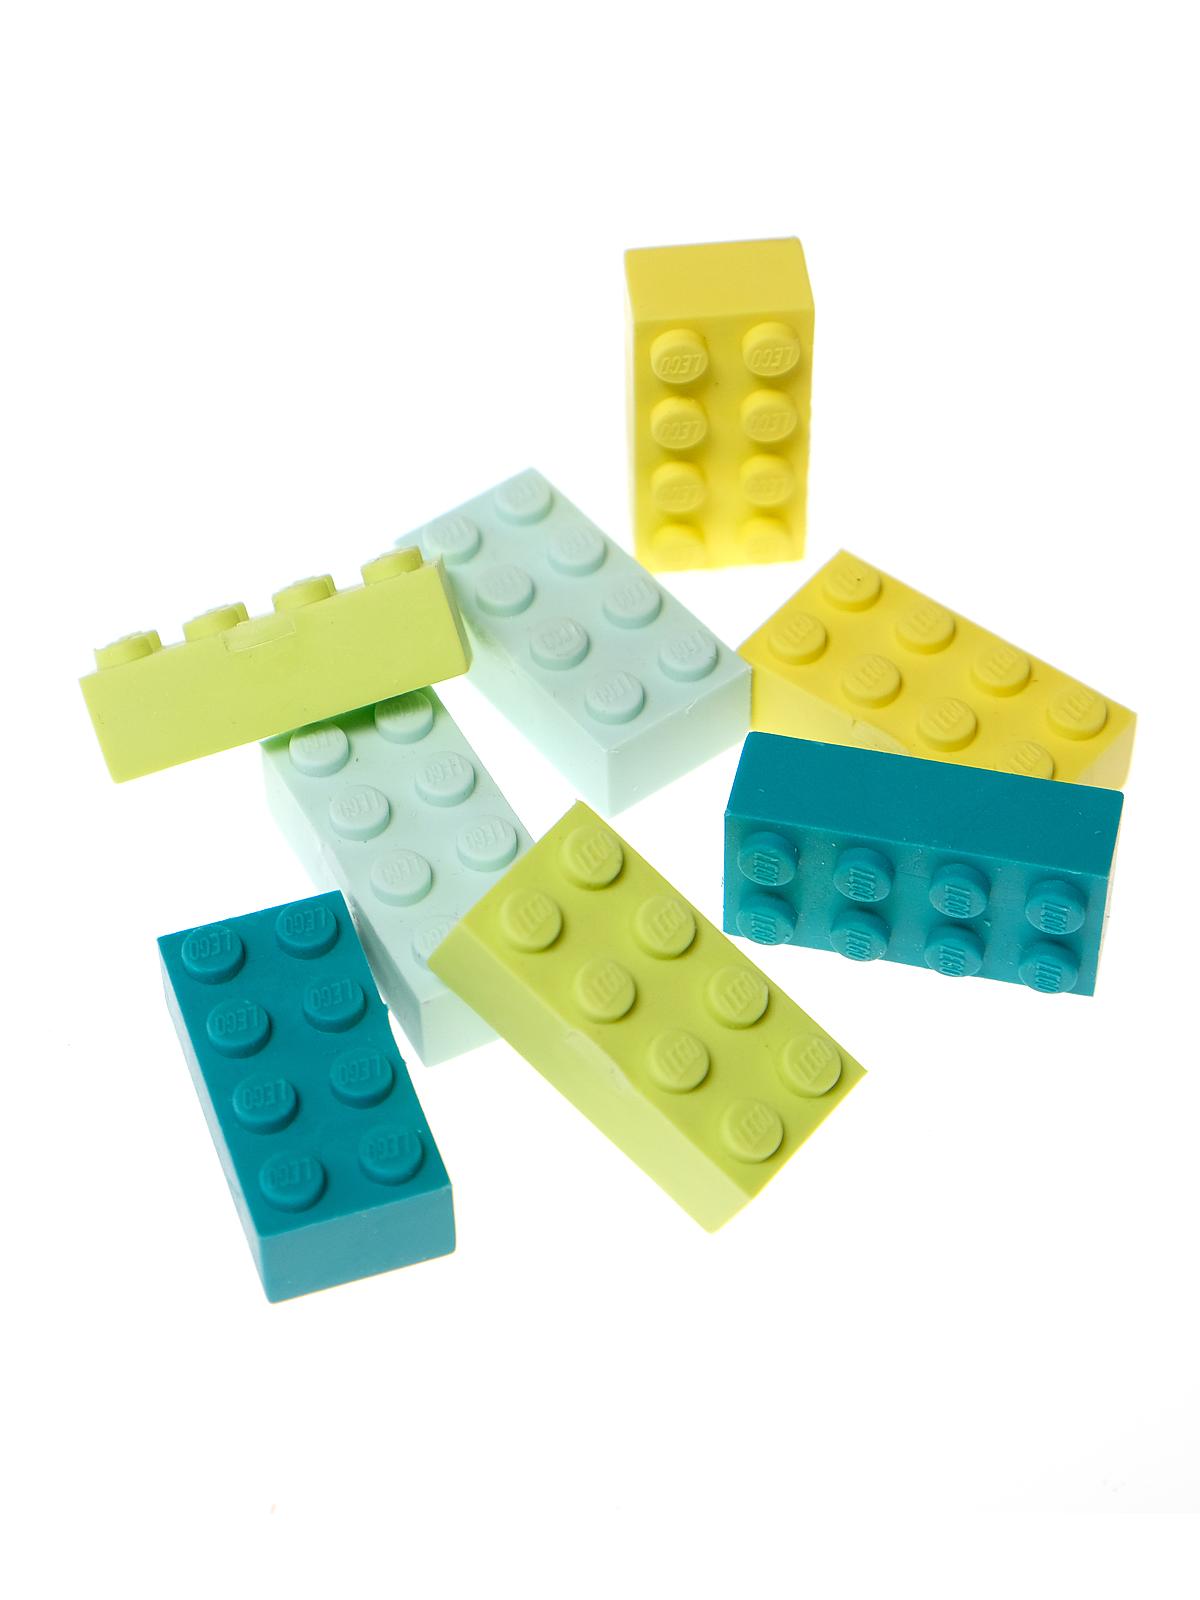 LEGO Brick Erasers Each